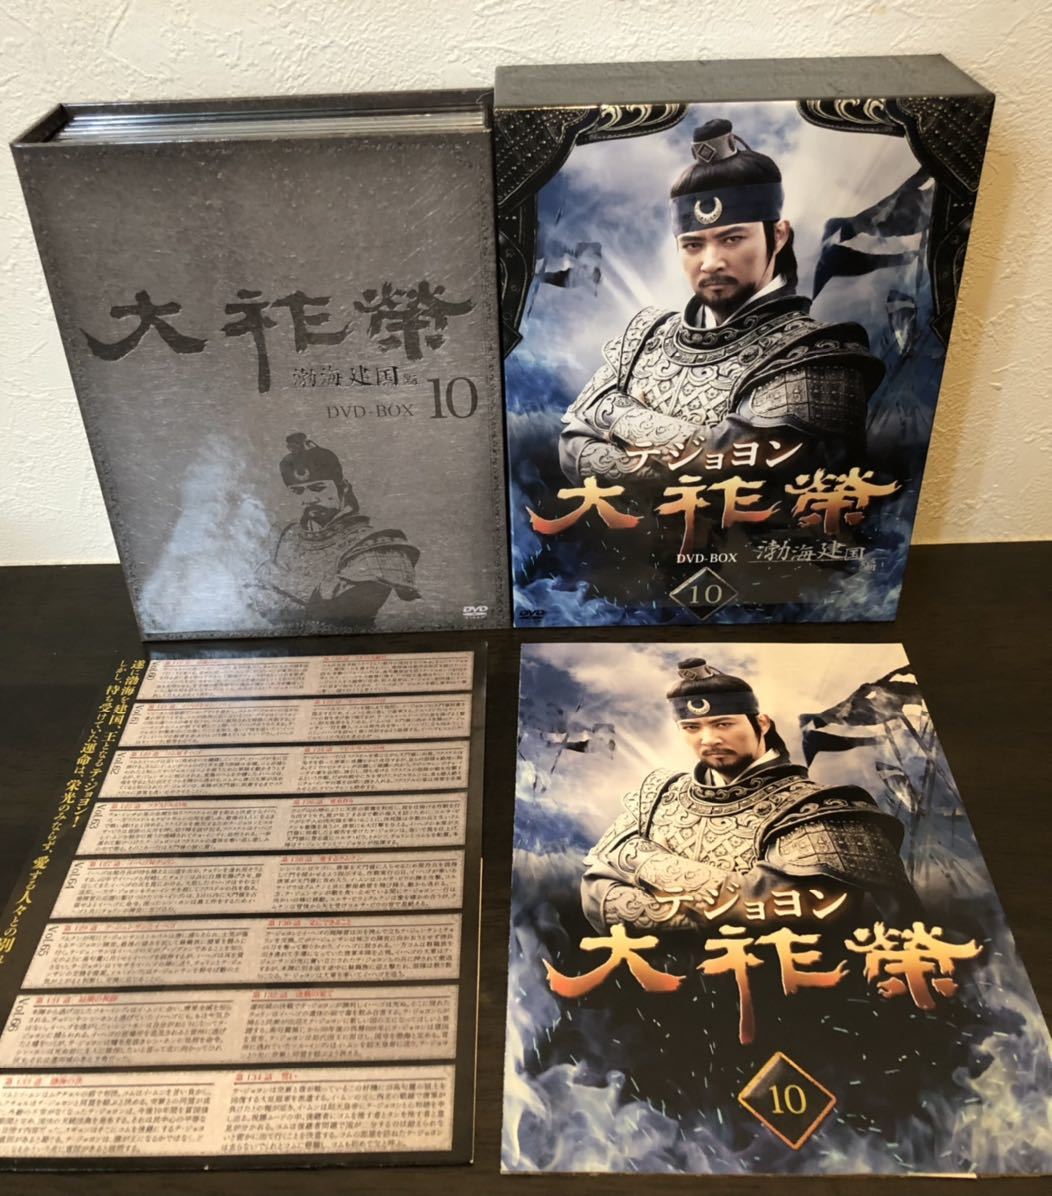 大祚榮 テジョヨン DVD-BOX 10 gzerosolucoes.com.br